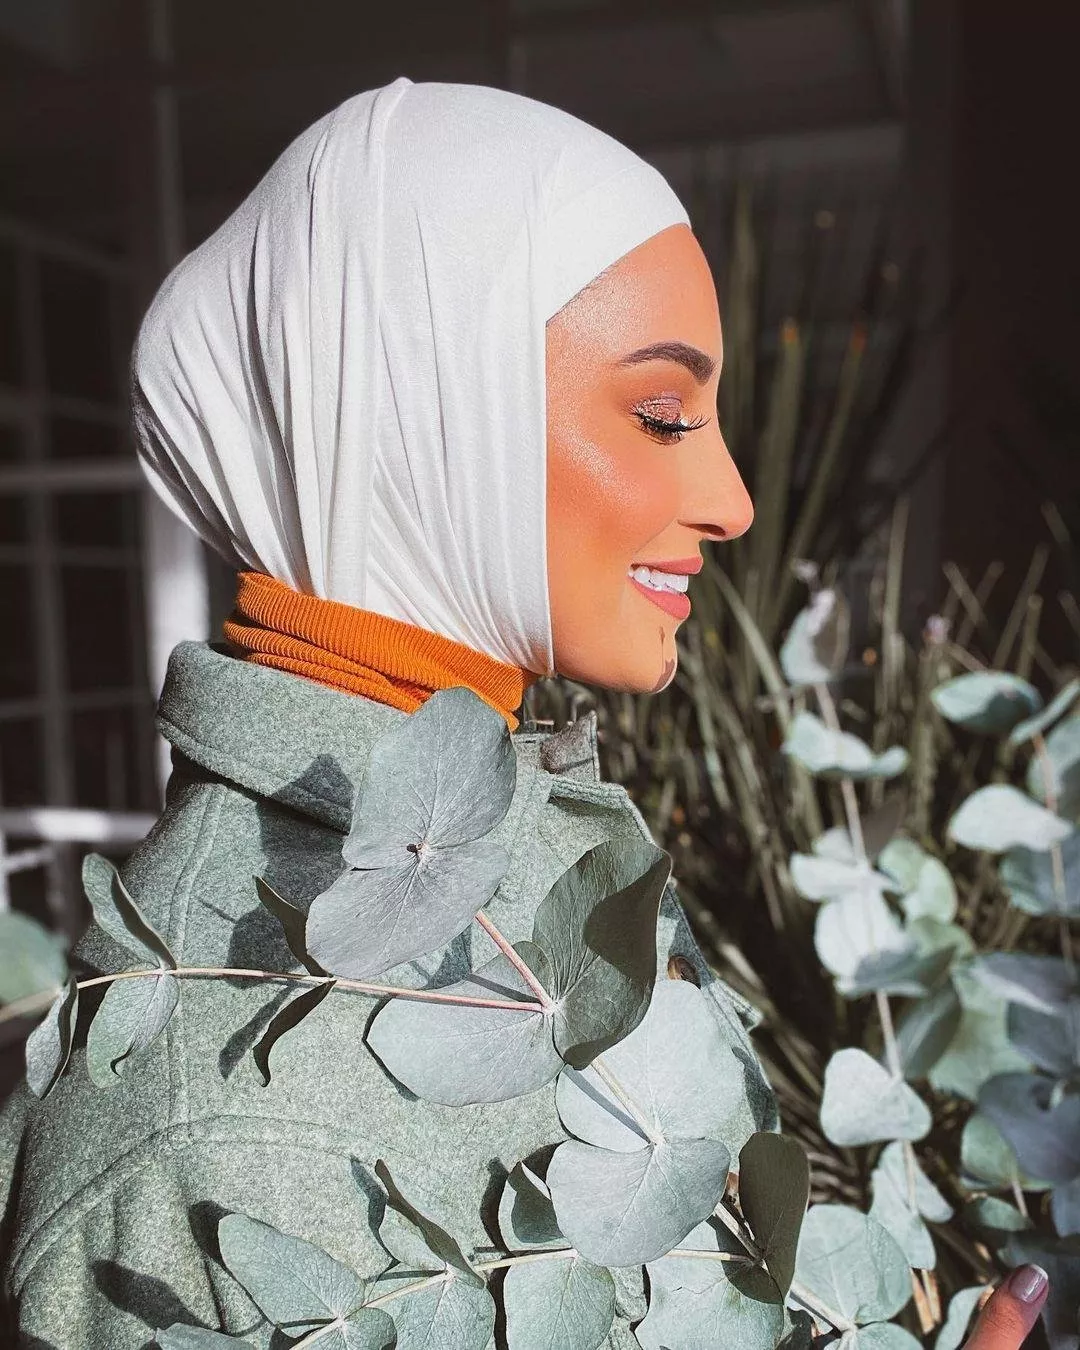 دليلكِ الكامل لاختيار قماش الحجاب المناسب مع الملابس